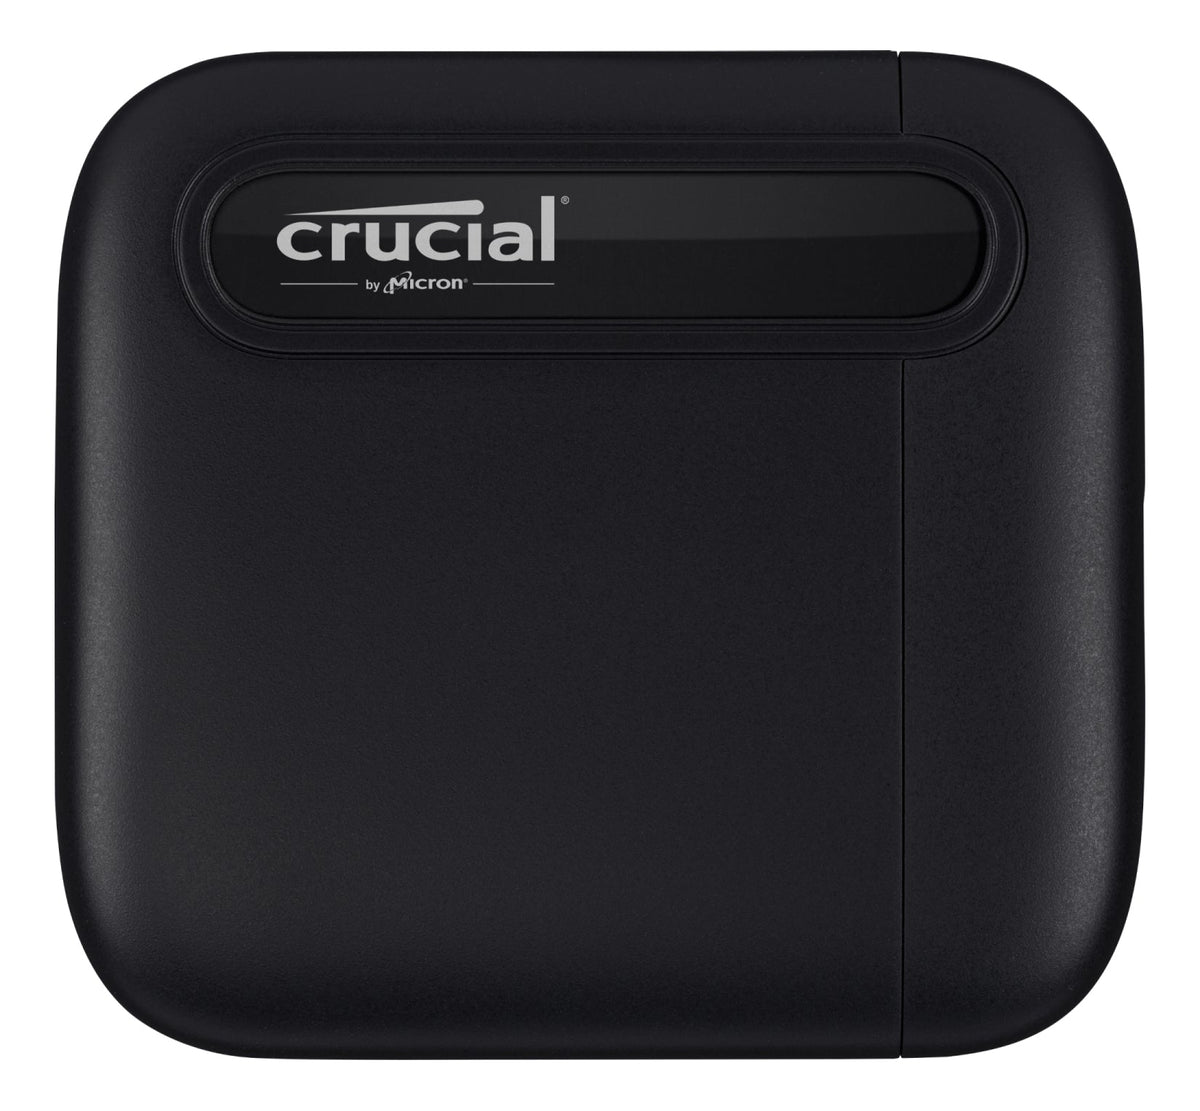 Crucial External SSD X6 2000 GB Black